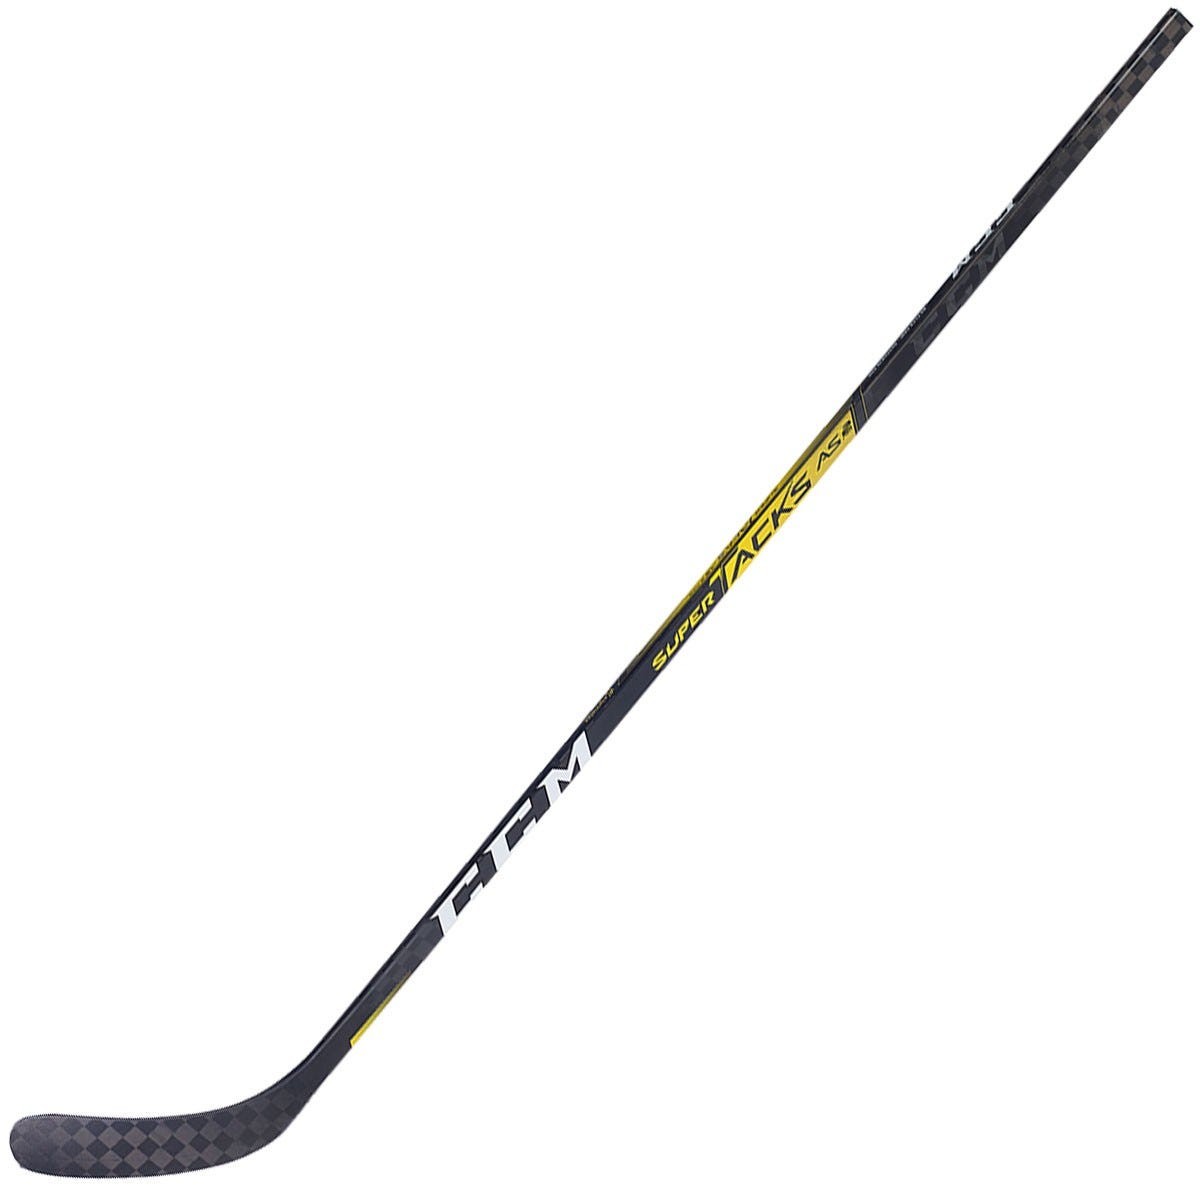 CCM Super Tacks AS2 Pro Junior Composite Hockey Stick